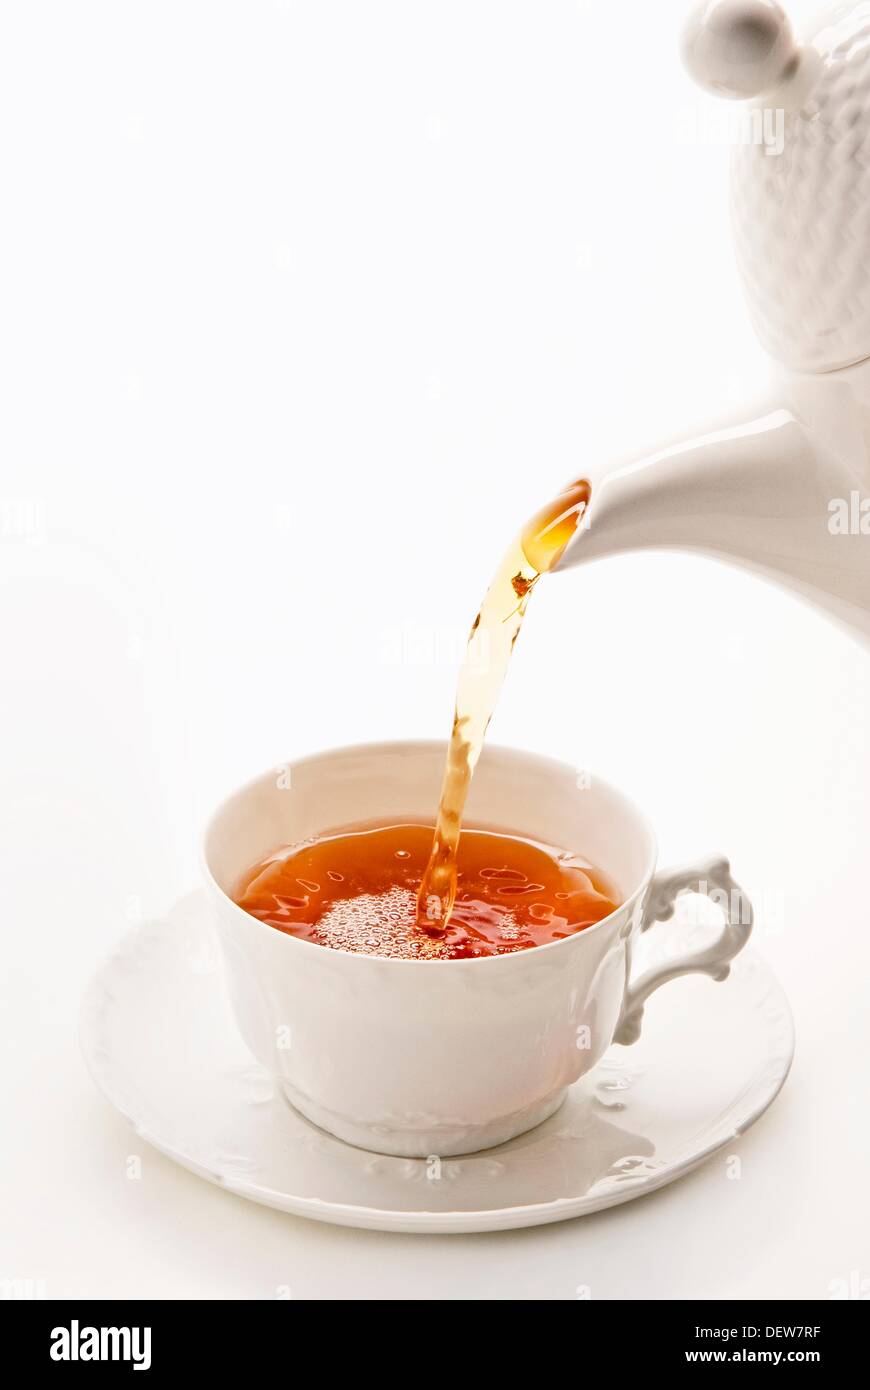 Verter el té en taza de porcelana china blanca Foto de stock